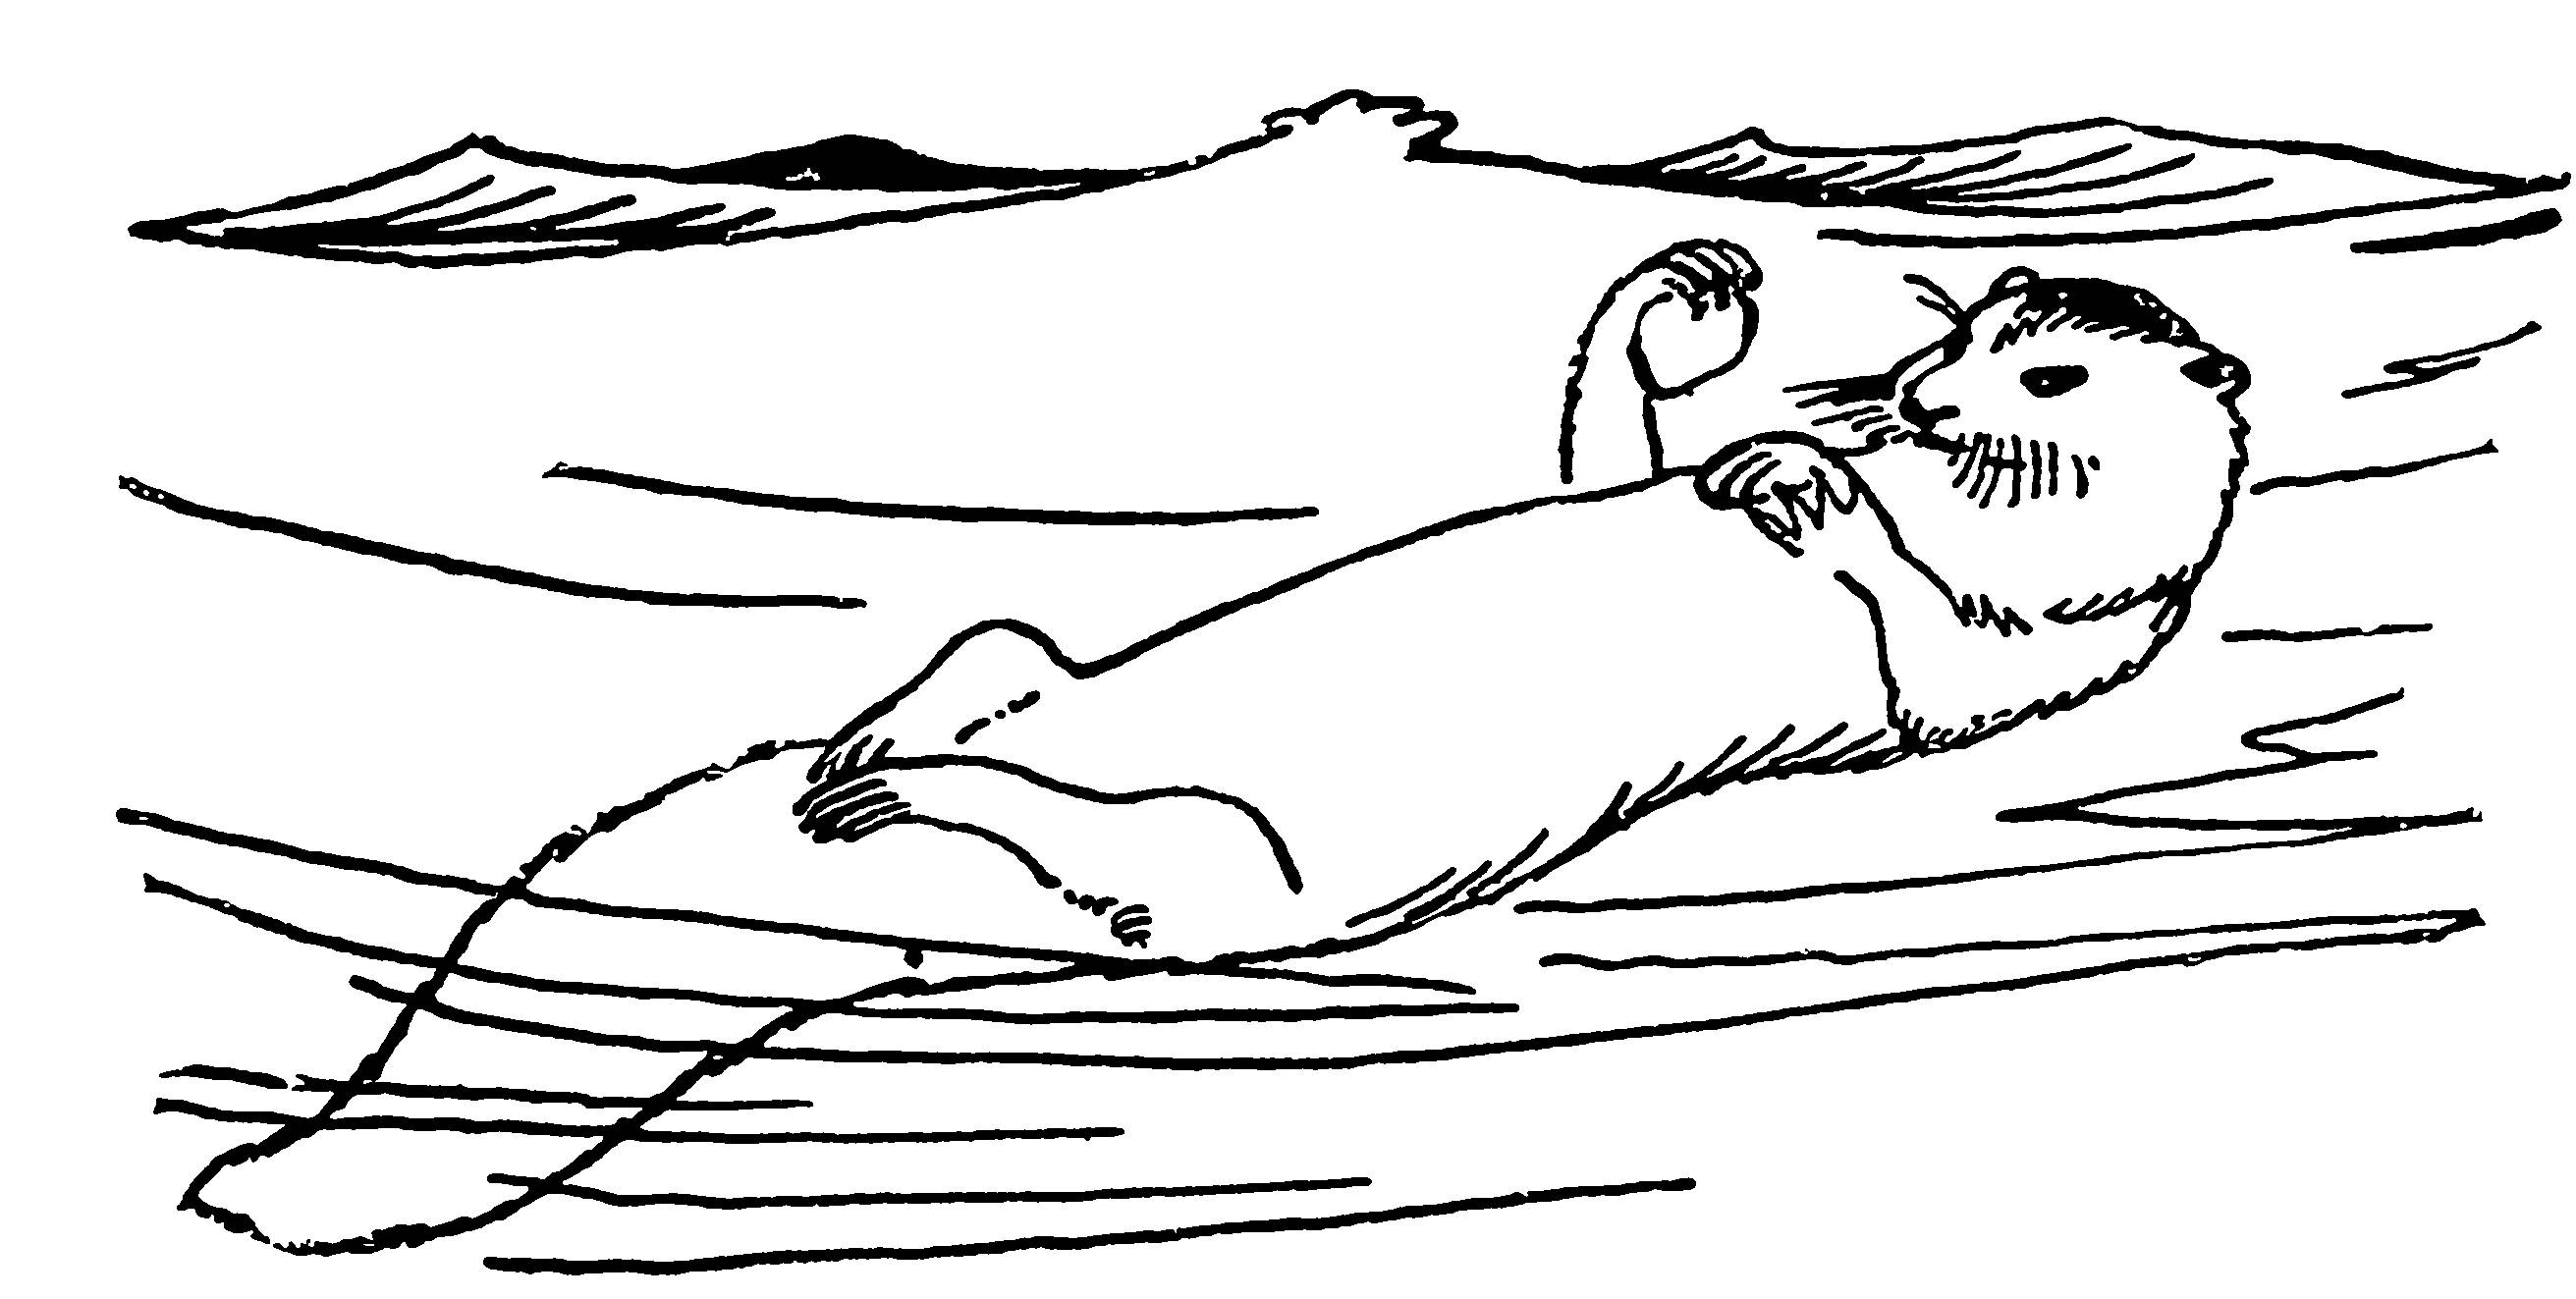 Нарисованного калана лежащего на воде